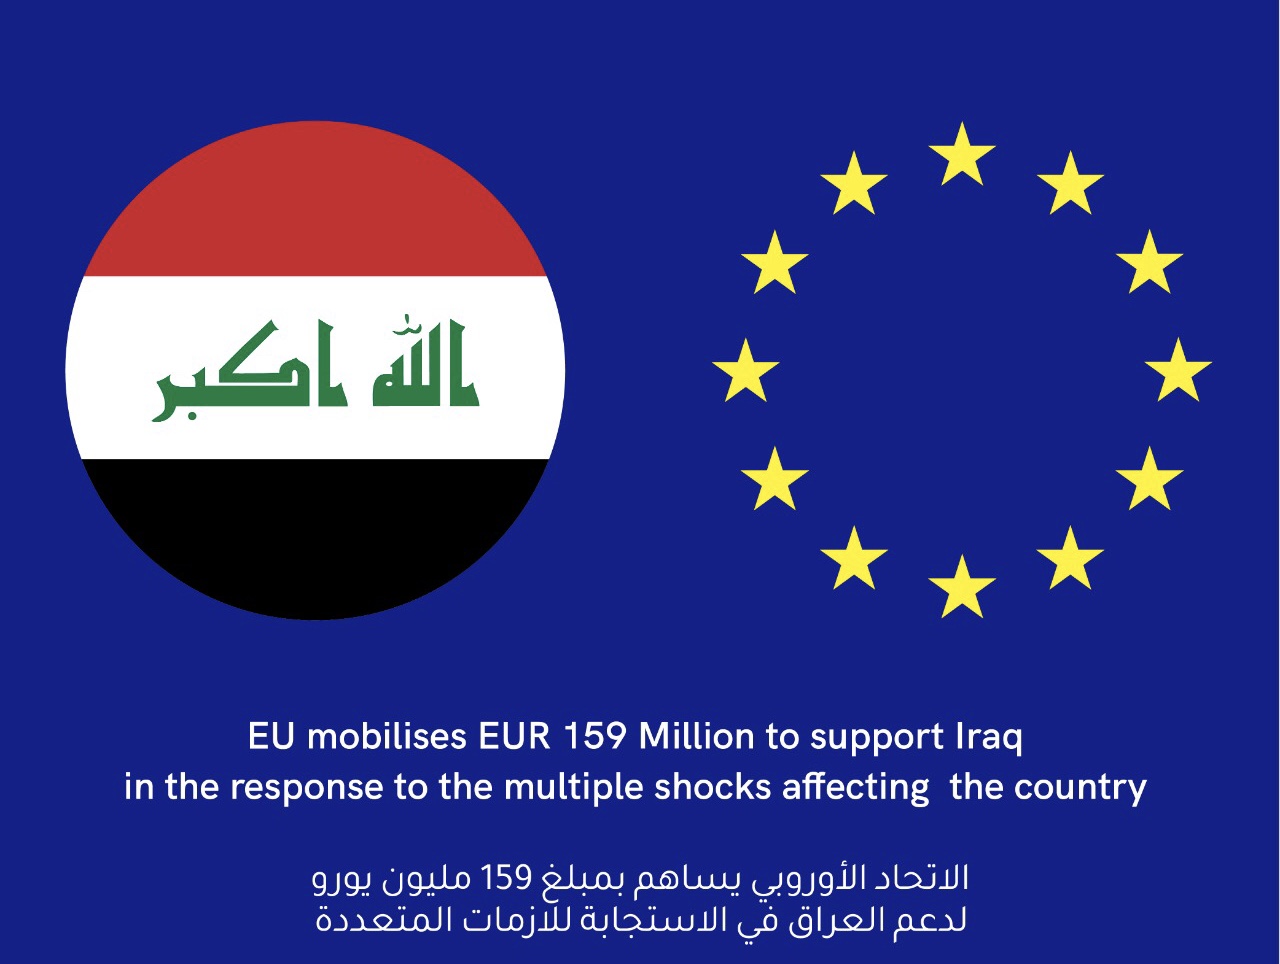 الاتحاد الأوروبي يساهم بمبلغ 159 مليون يورو لدعم العراق في الاستجابة للازمات المتعددة